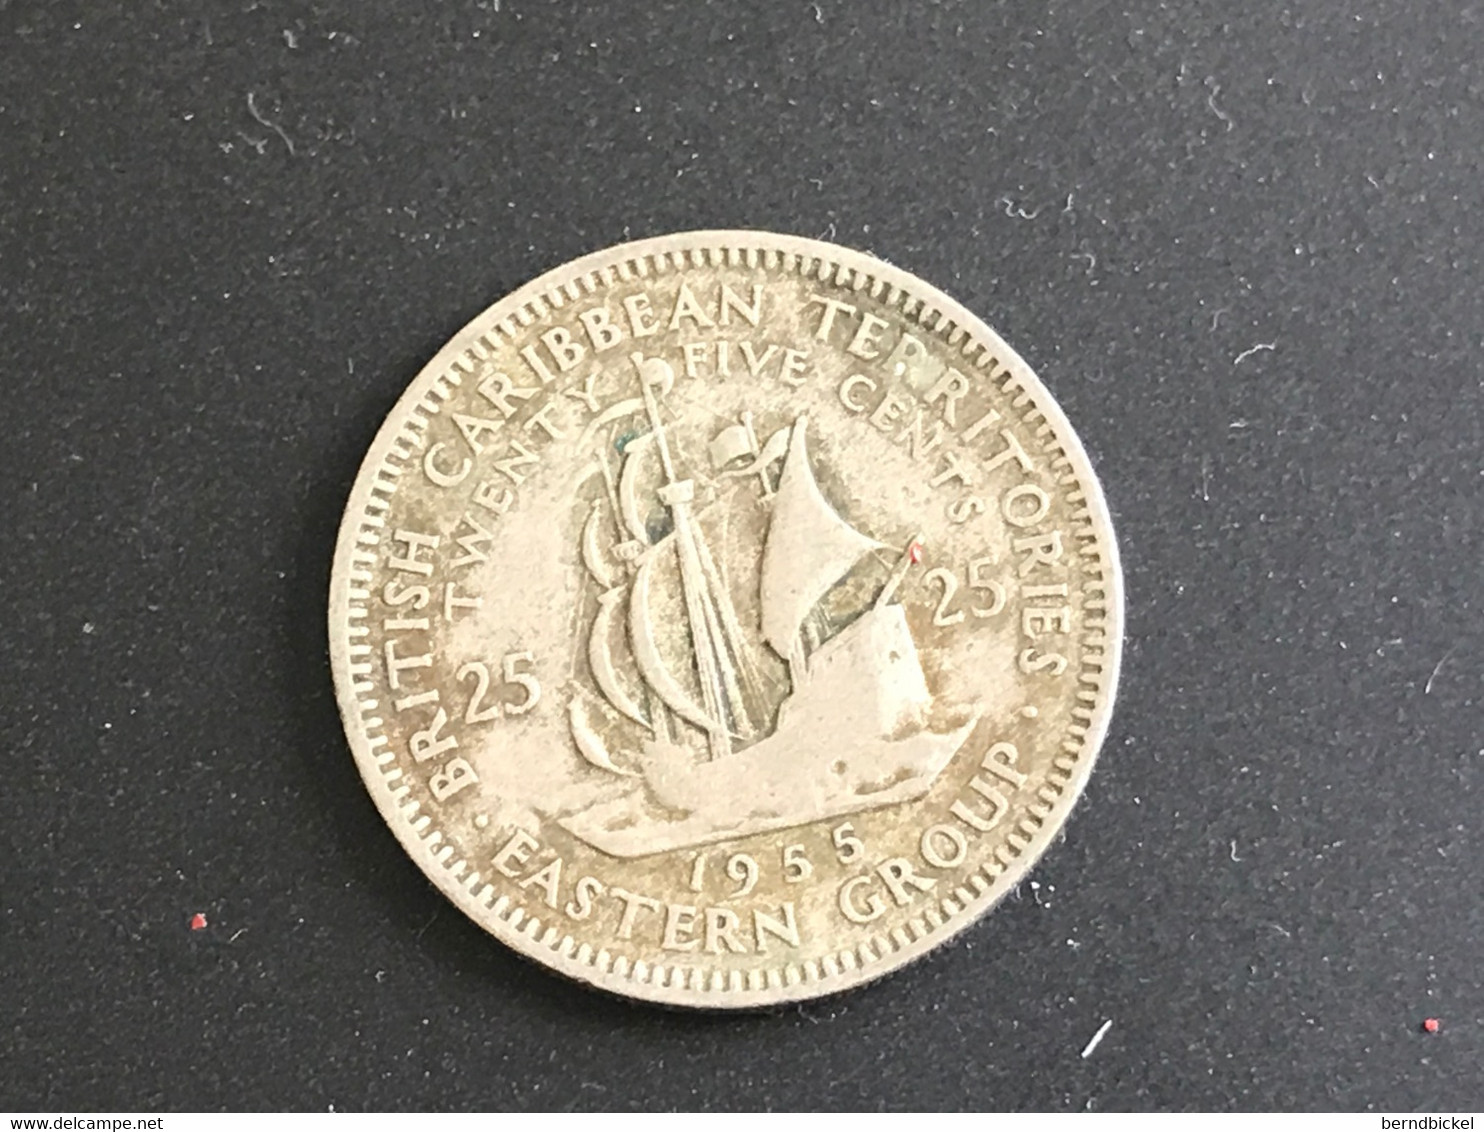 Münze Münzen Umlaufmünze Ostkaribische Territorien 25 Cents 1955 - Britse Caribische Gebieden